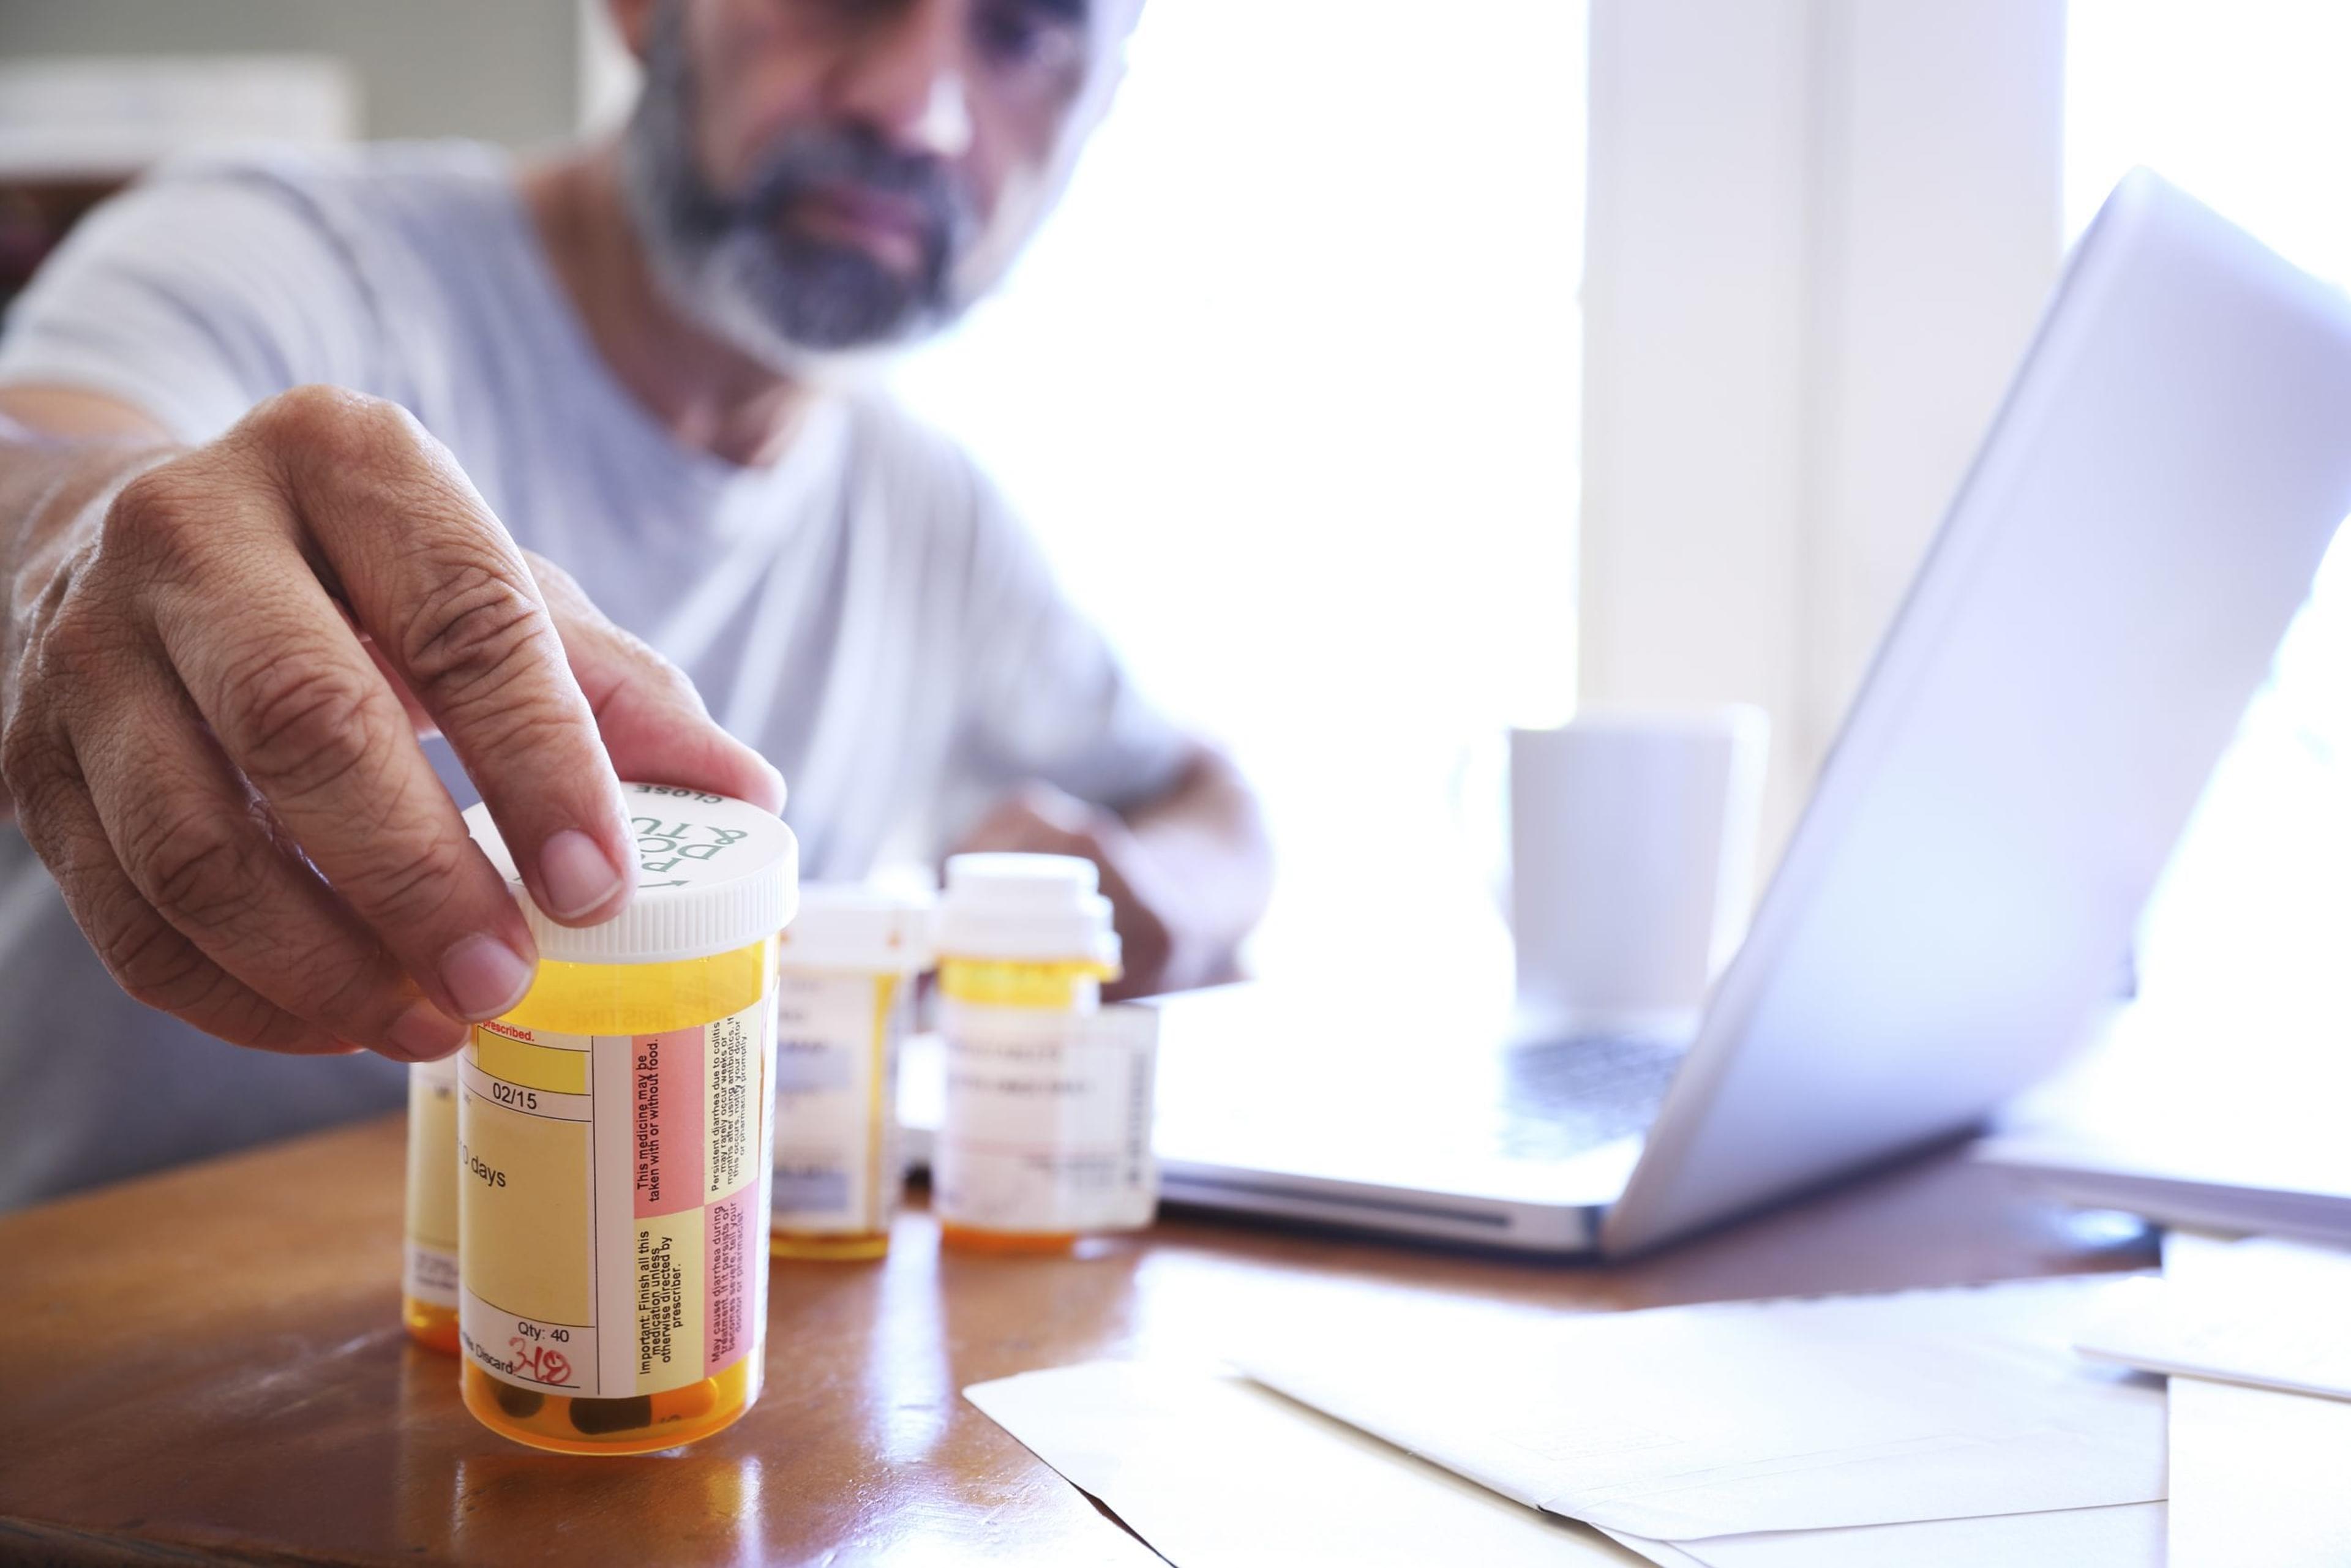 Man looking at his prescription labels